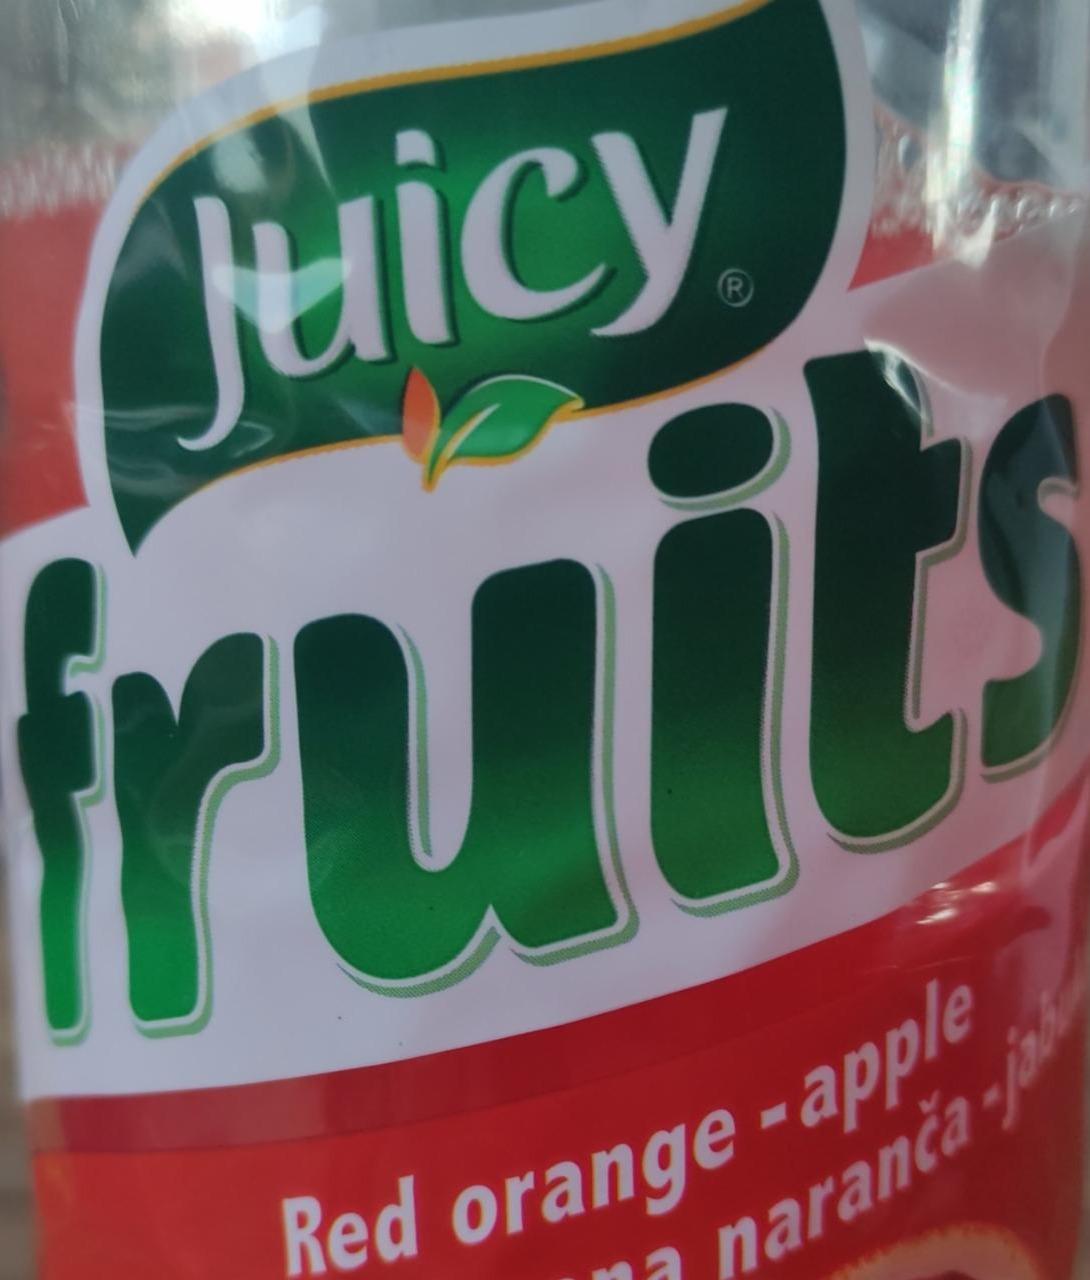 Fotografie - Juicy fruits